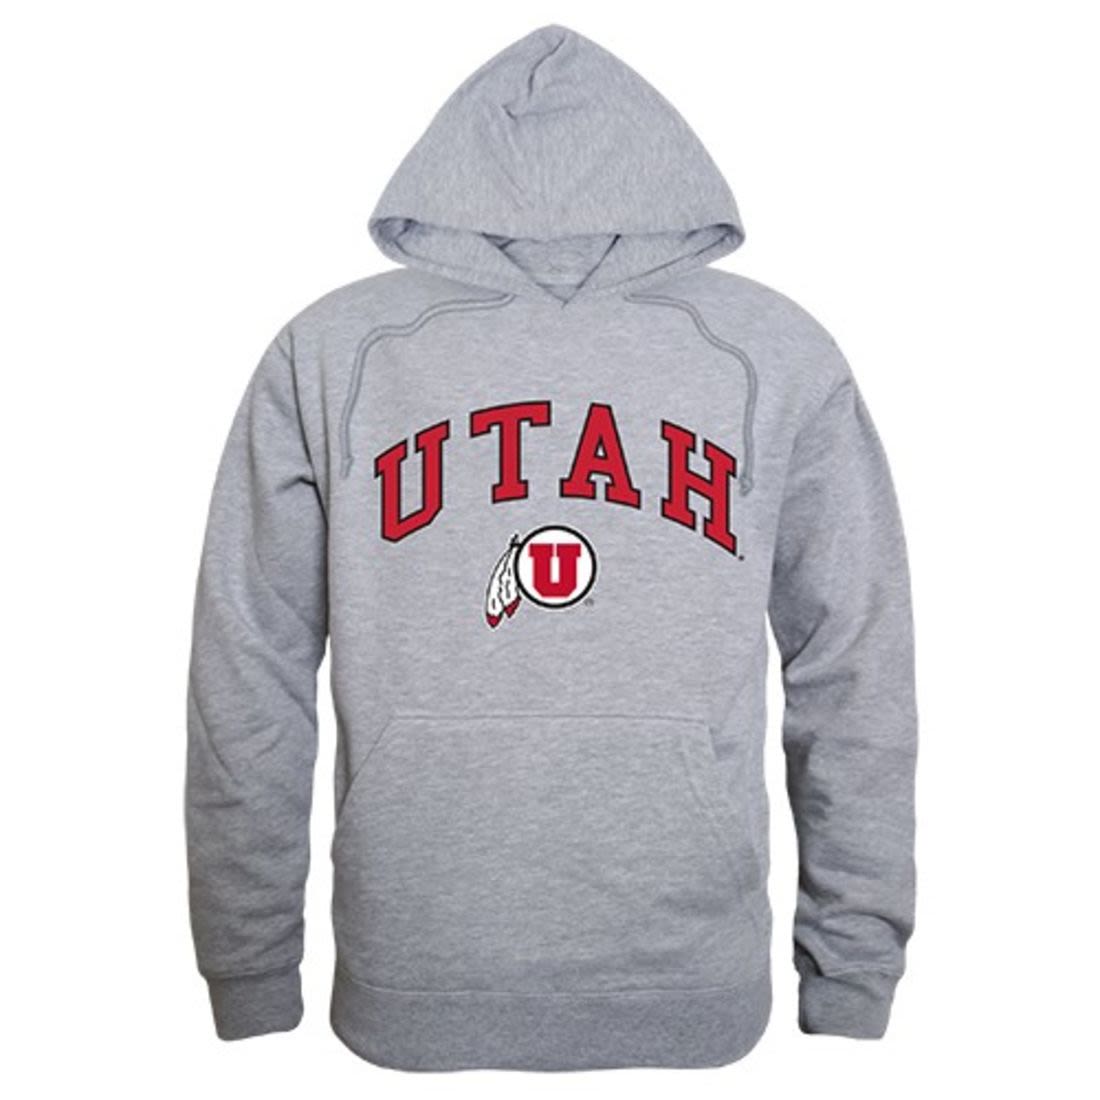 University of Utah Utes Campus Hoodie Sweatshirt Heather Grey-Campus-Wardrobe